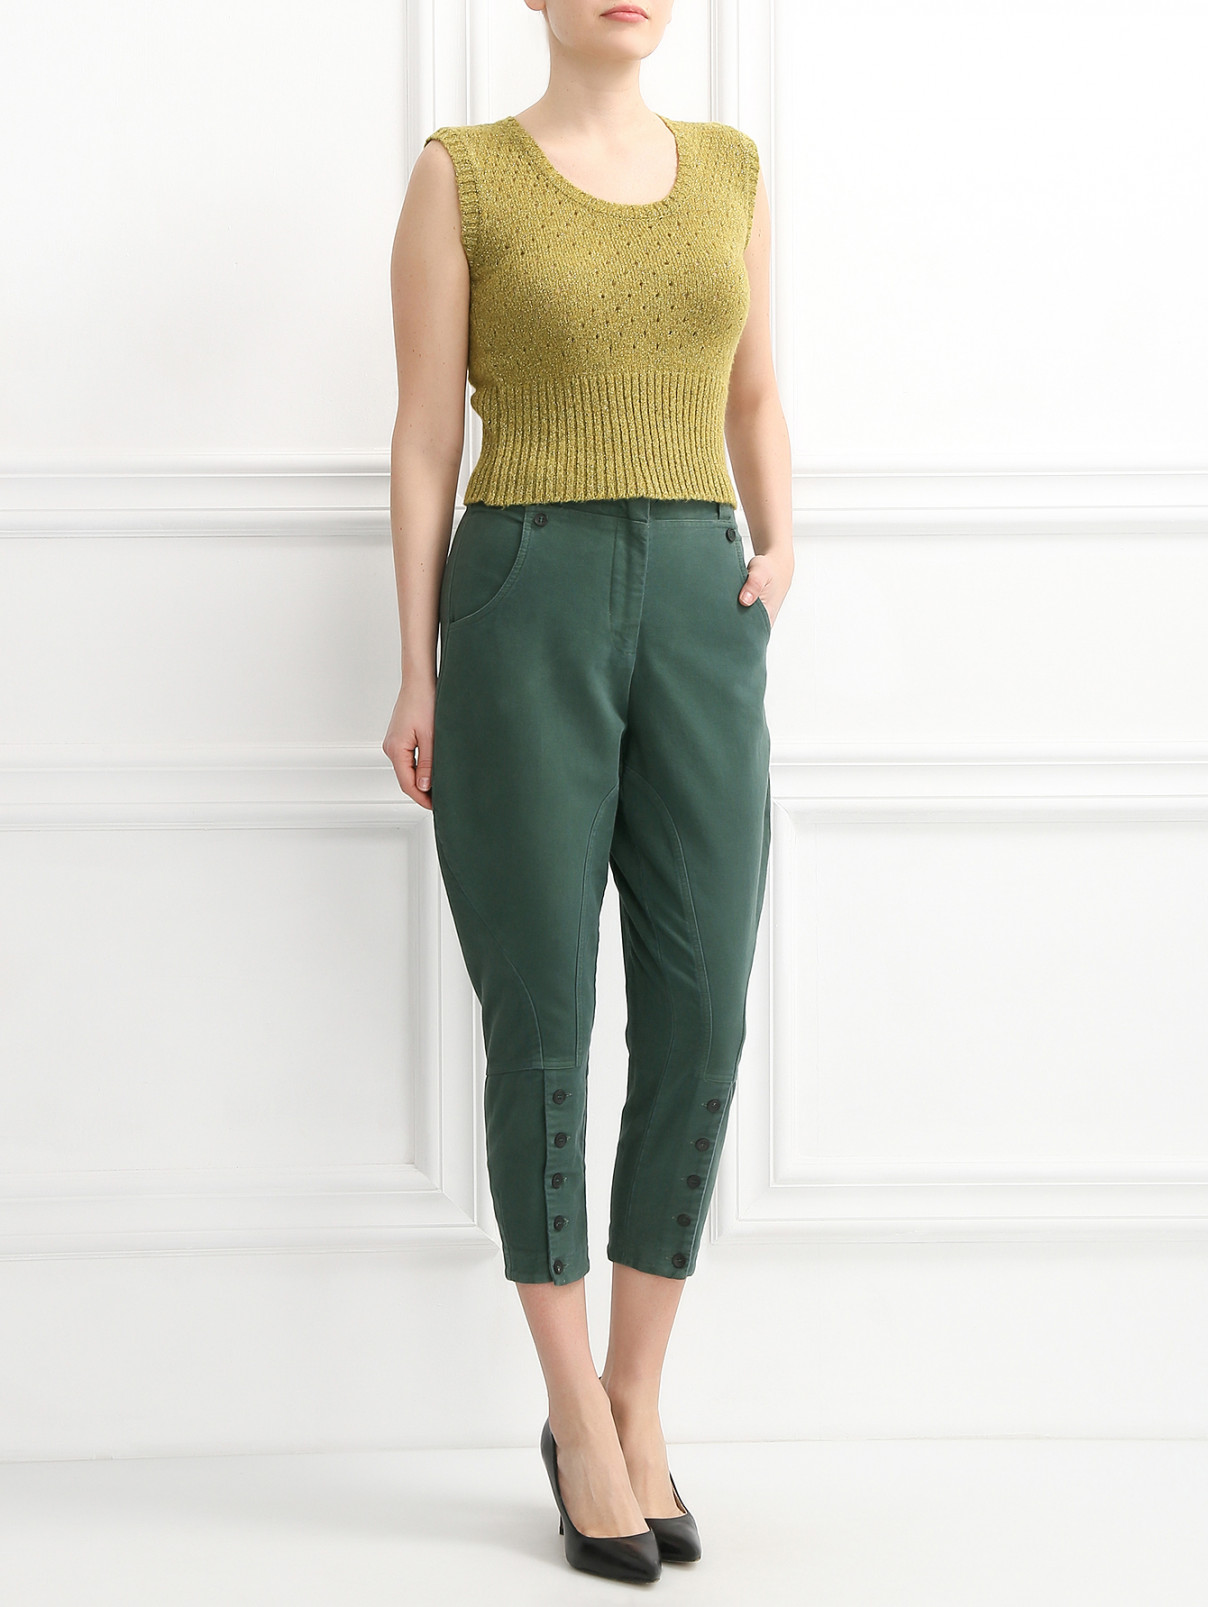 Укороченные брюки из хлопка Antonio Marras  –  Модель Общий вид  – Цвет:  Зеленый